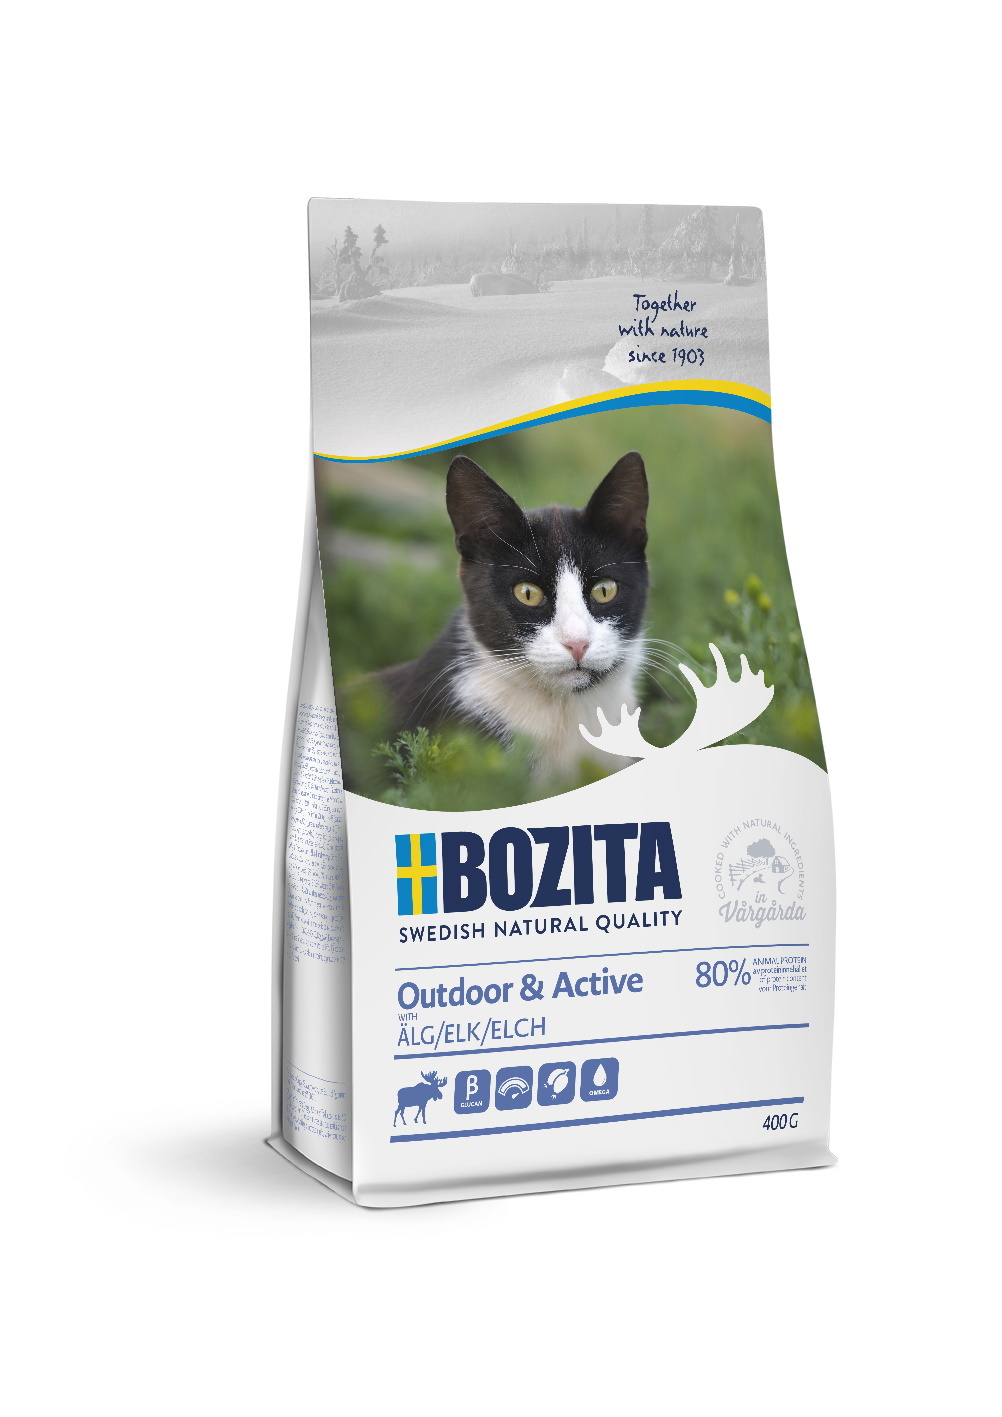 Сухой корм для кошек BOZITA Outdoor & Active, для активных, мясо лося, 2кг